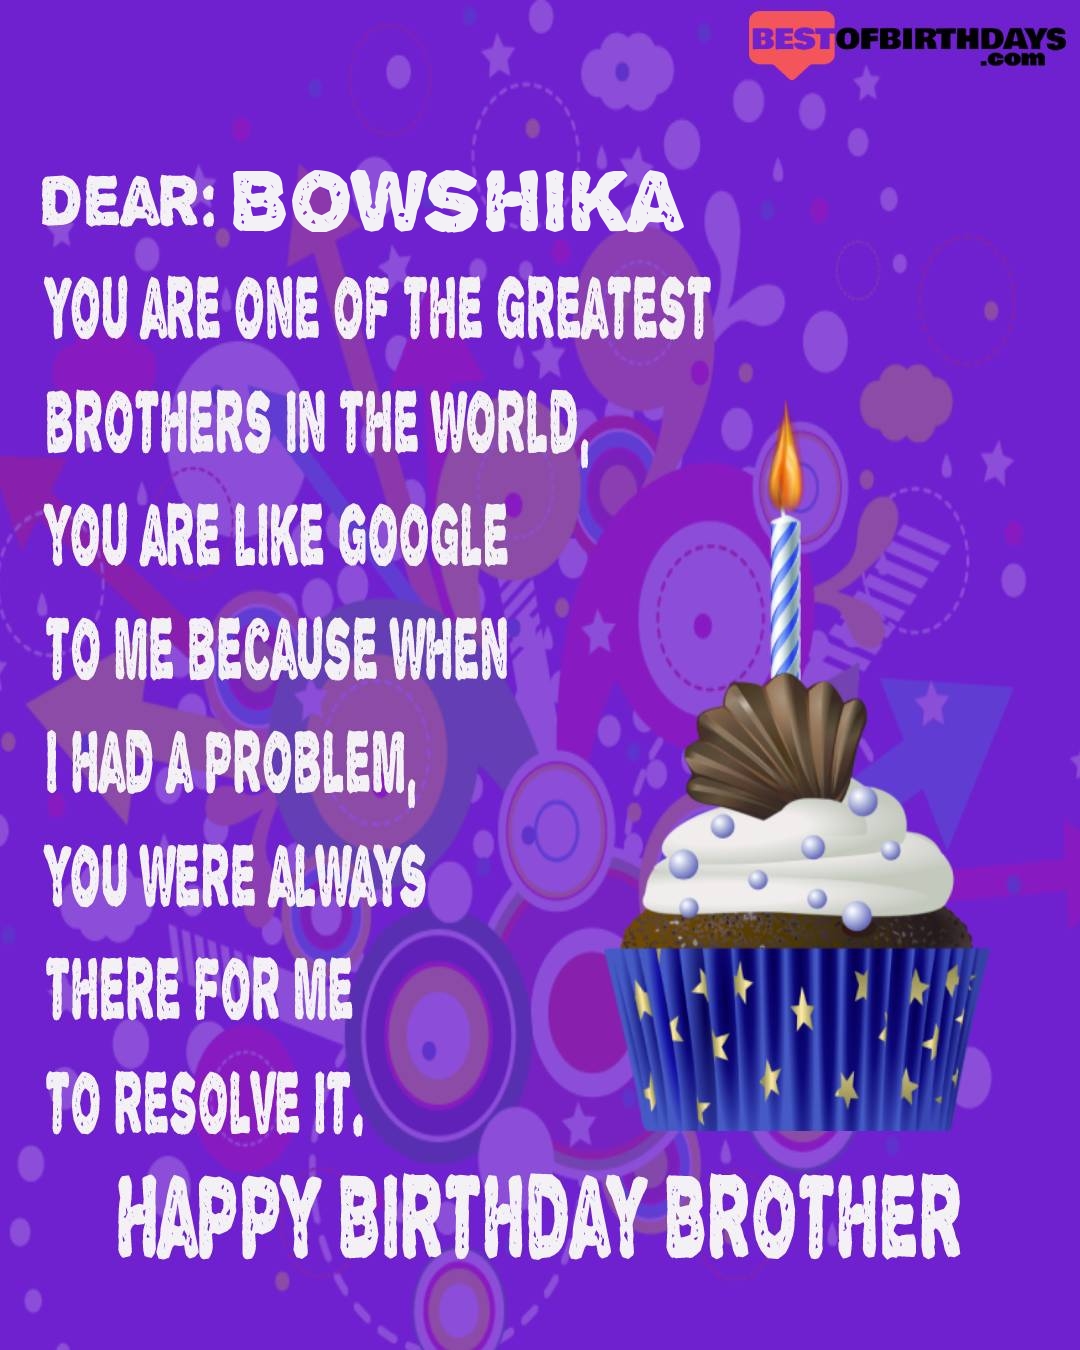 Happy birthday bowshika bhai brother bro